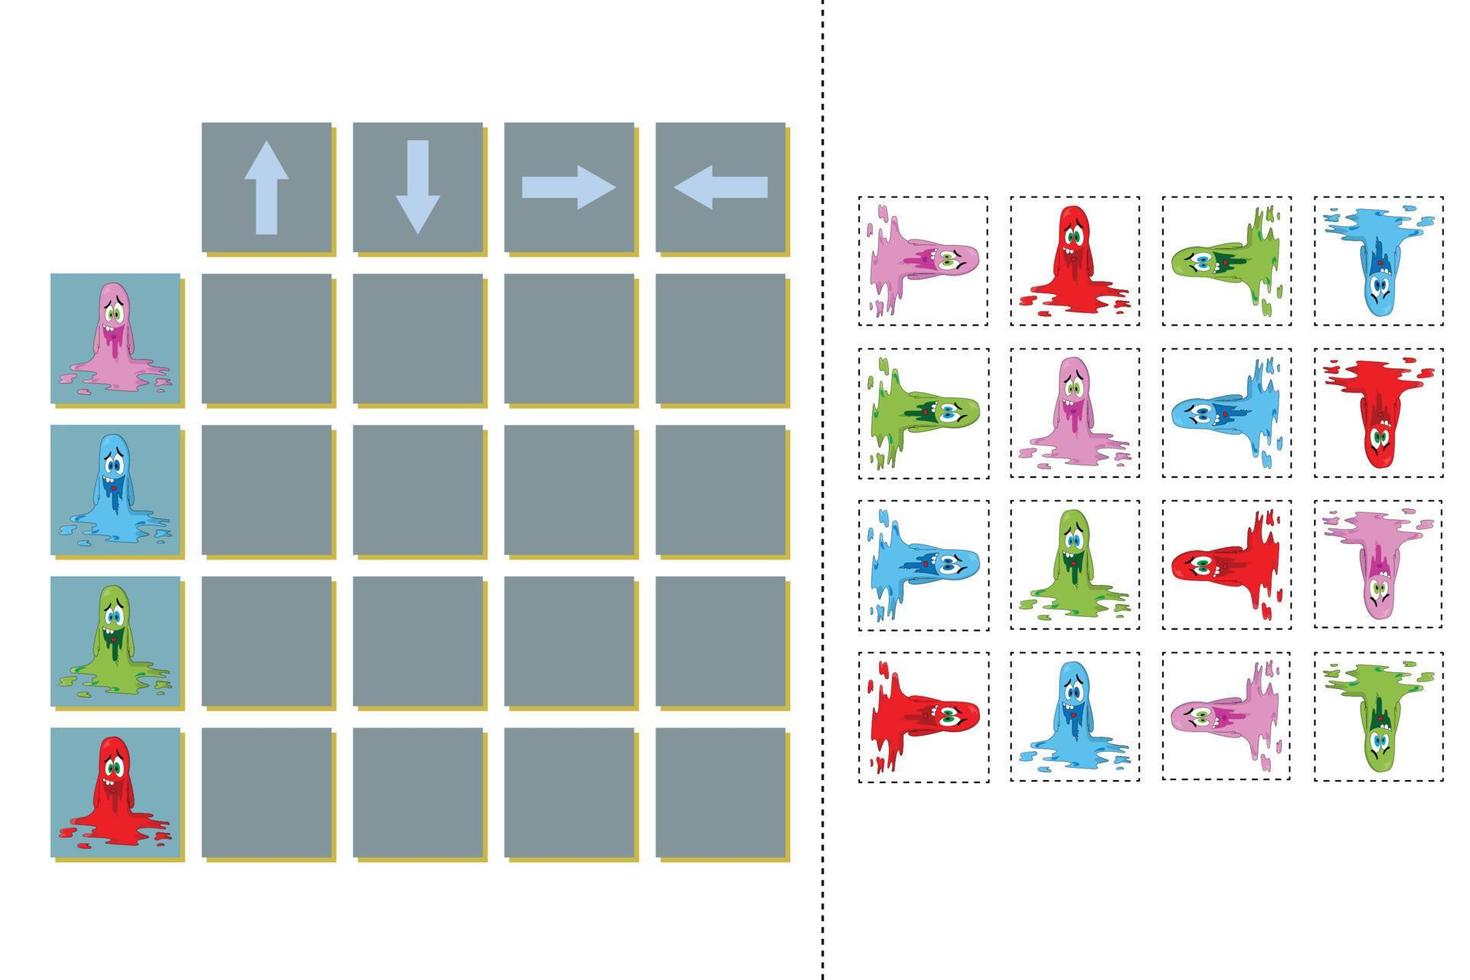 matcha tecknade monster och riktningar upp, ner, vänster och höger. pedagogiskt spel för barn. vektor